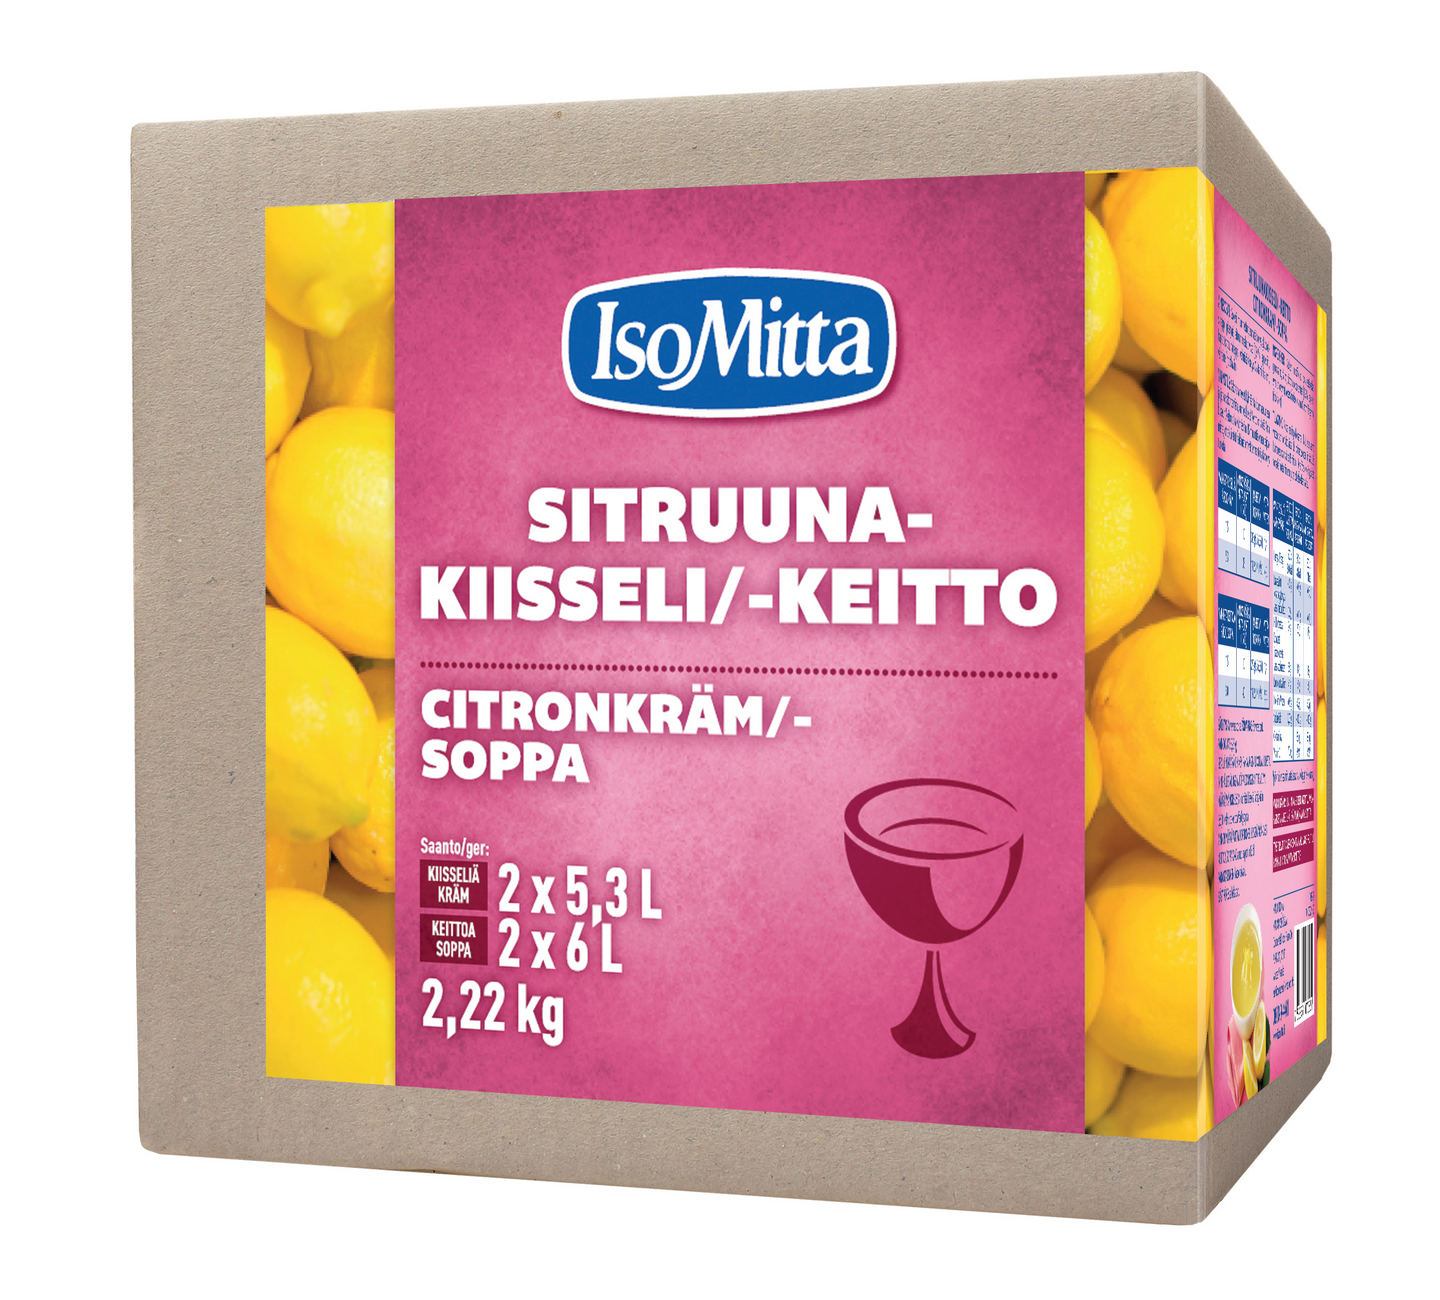 IsoMitta Sitruunakiisseli/-keitto 2x1110g